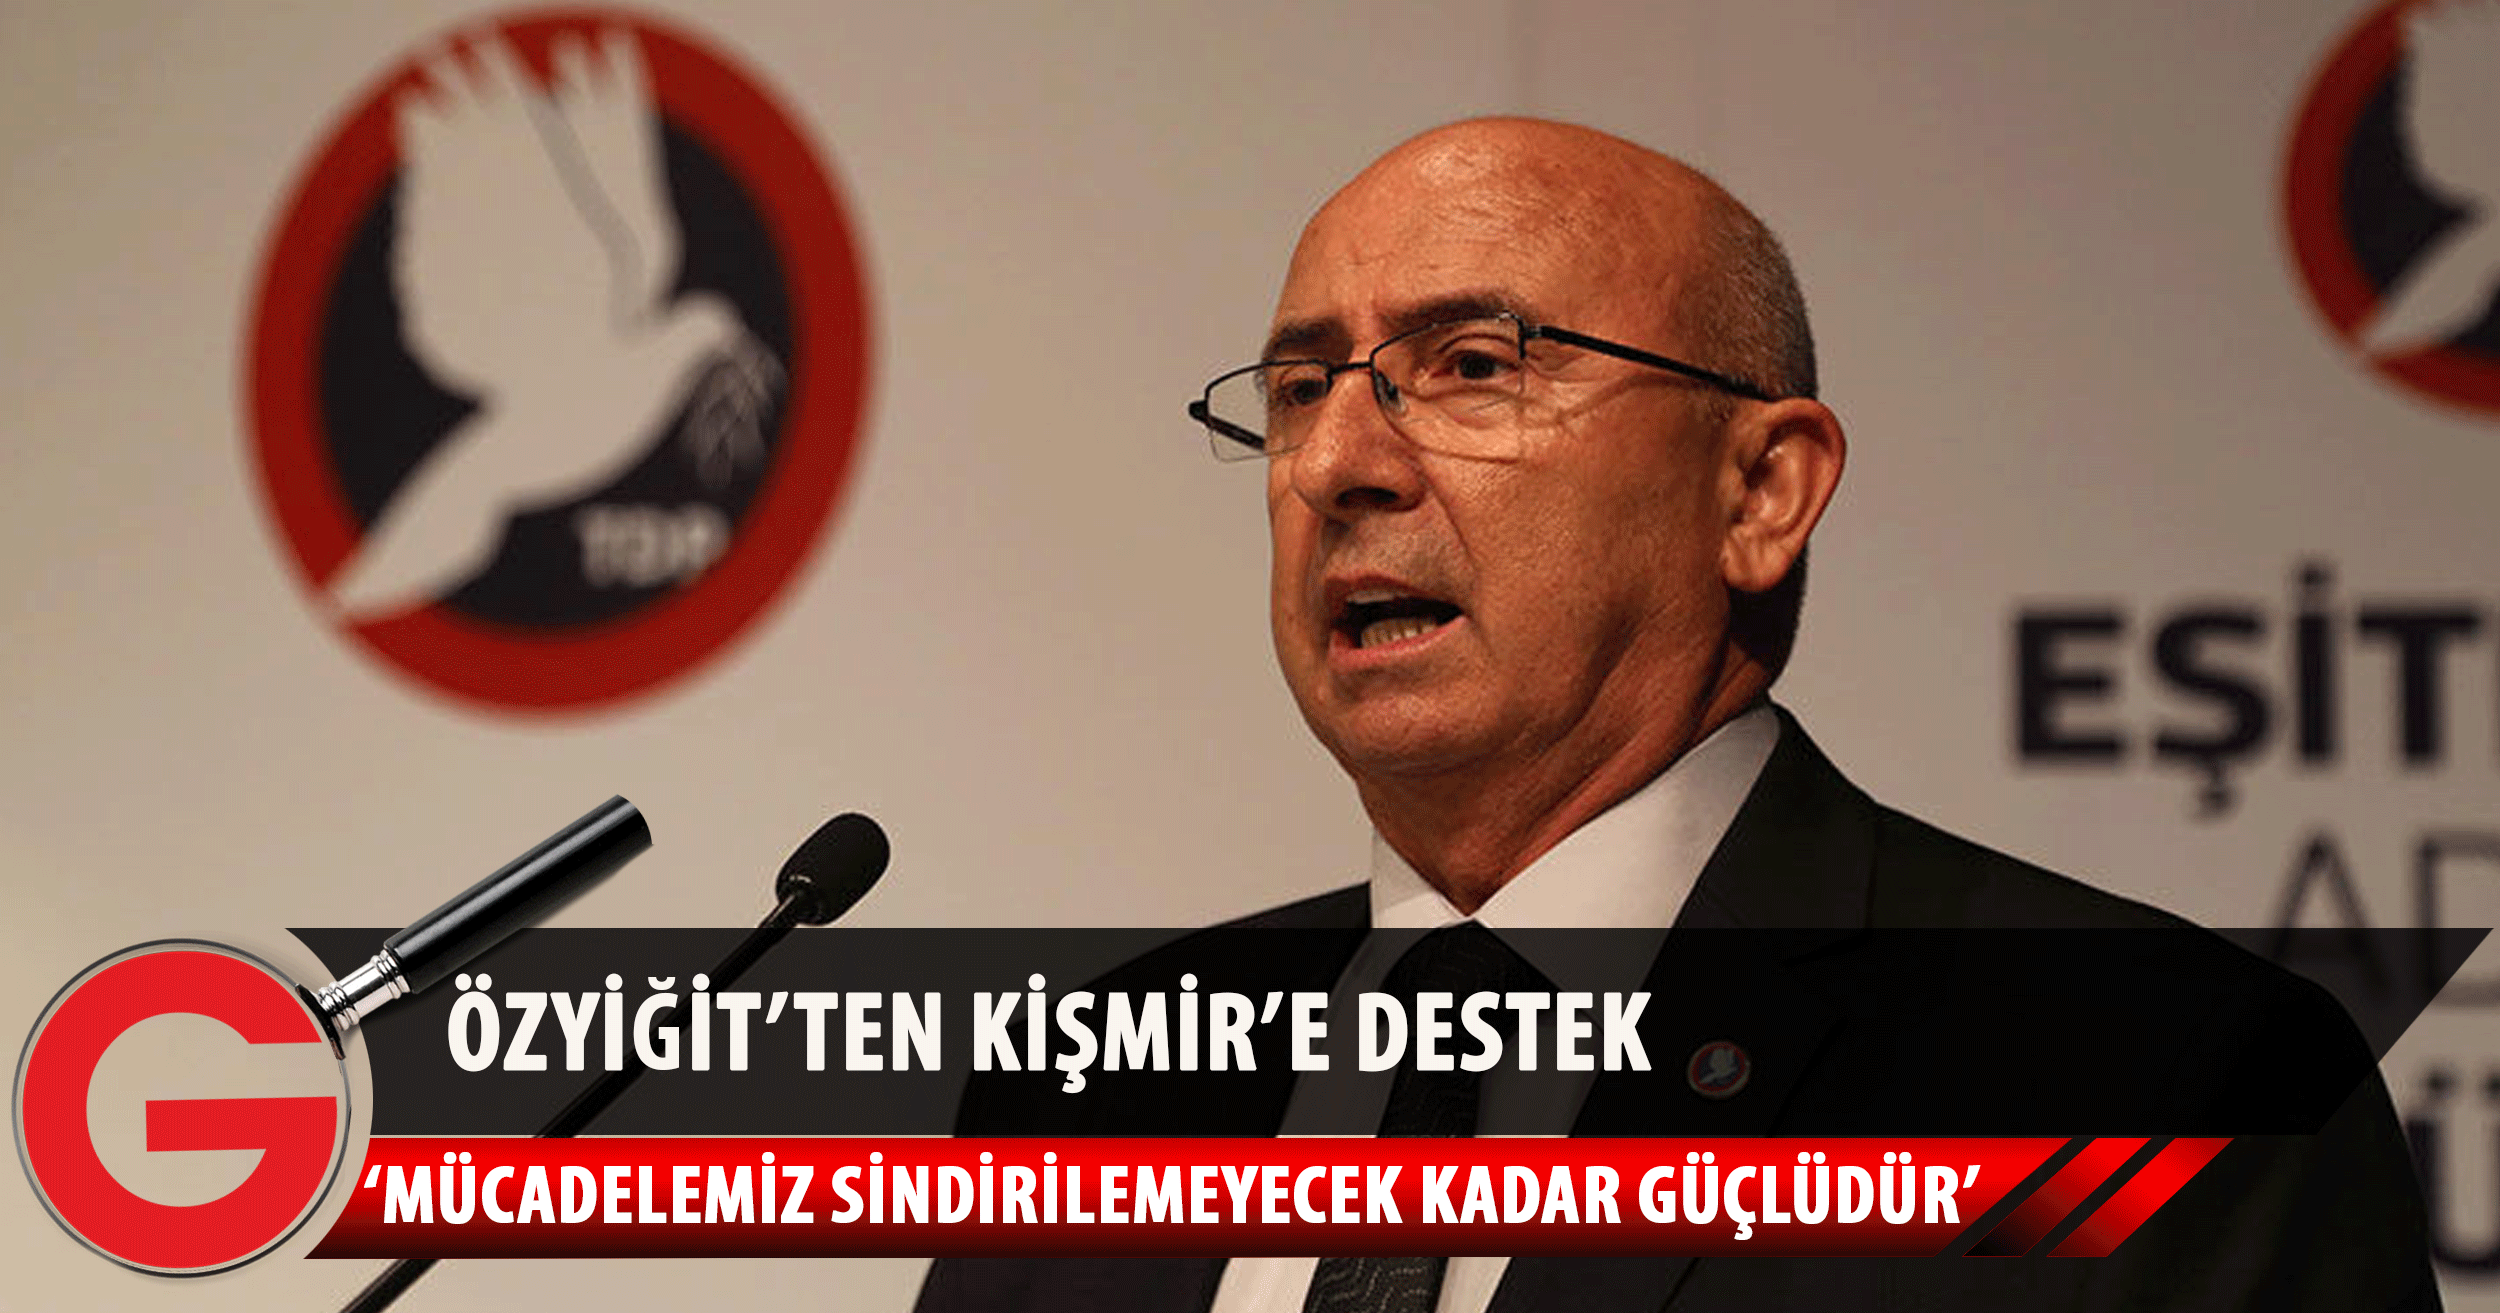 TDP Başkanı Cemal Özyiğit, Ali Kişmir'in Türkiye'de tutuklanmasına sosyal medya hesabı üzerinden tepki gösterdi